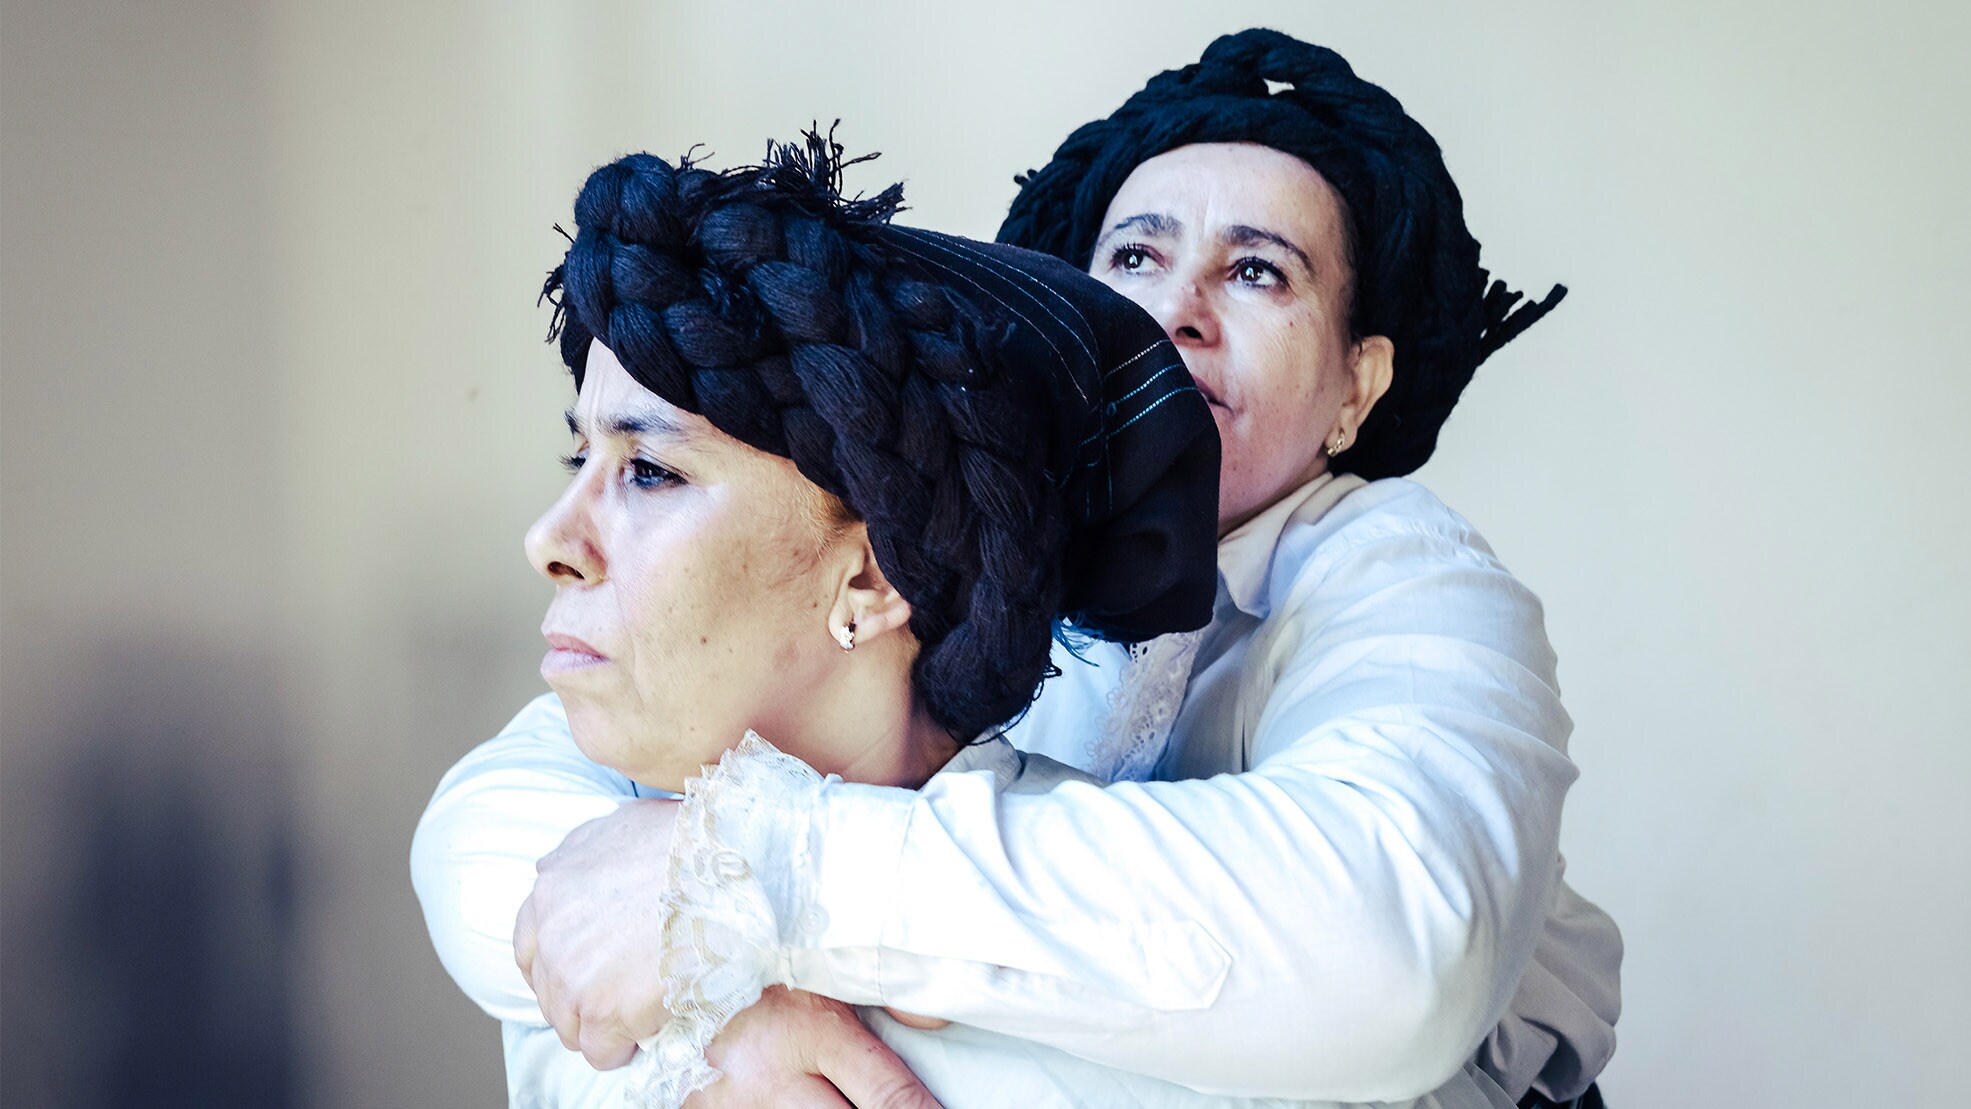 Une femme de profil avec un foulard noir retenant ses cheveux et une chemise blanche, porte sur son dos une autre femme vêtue à l’identique.